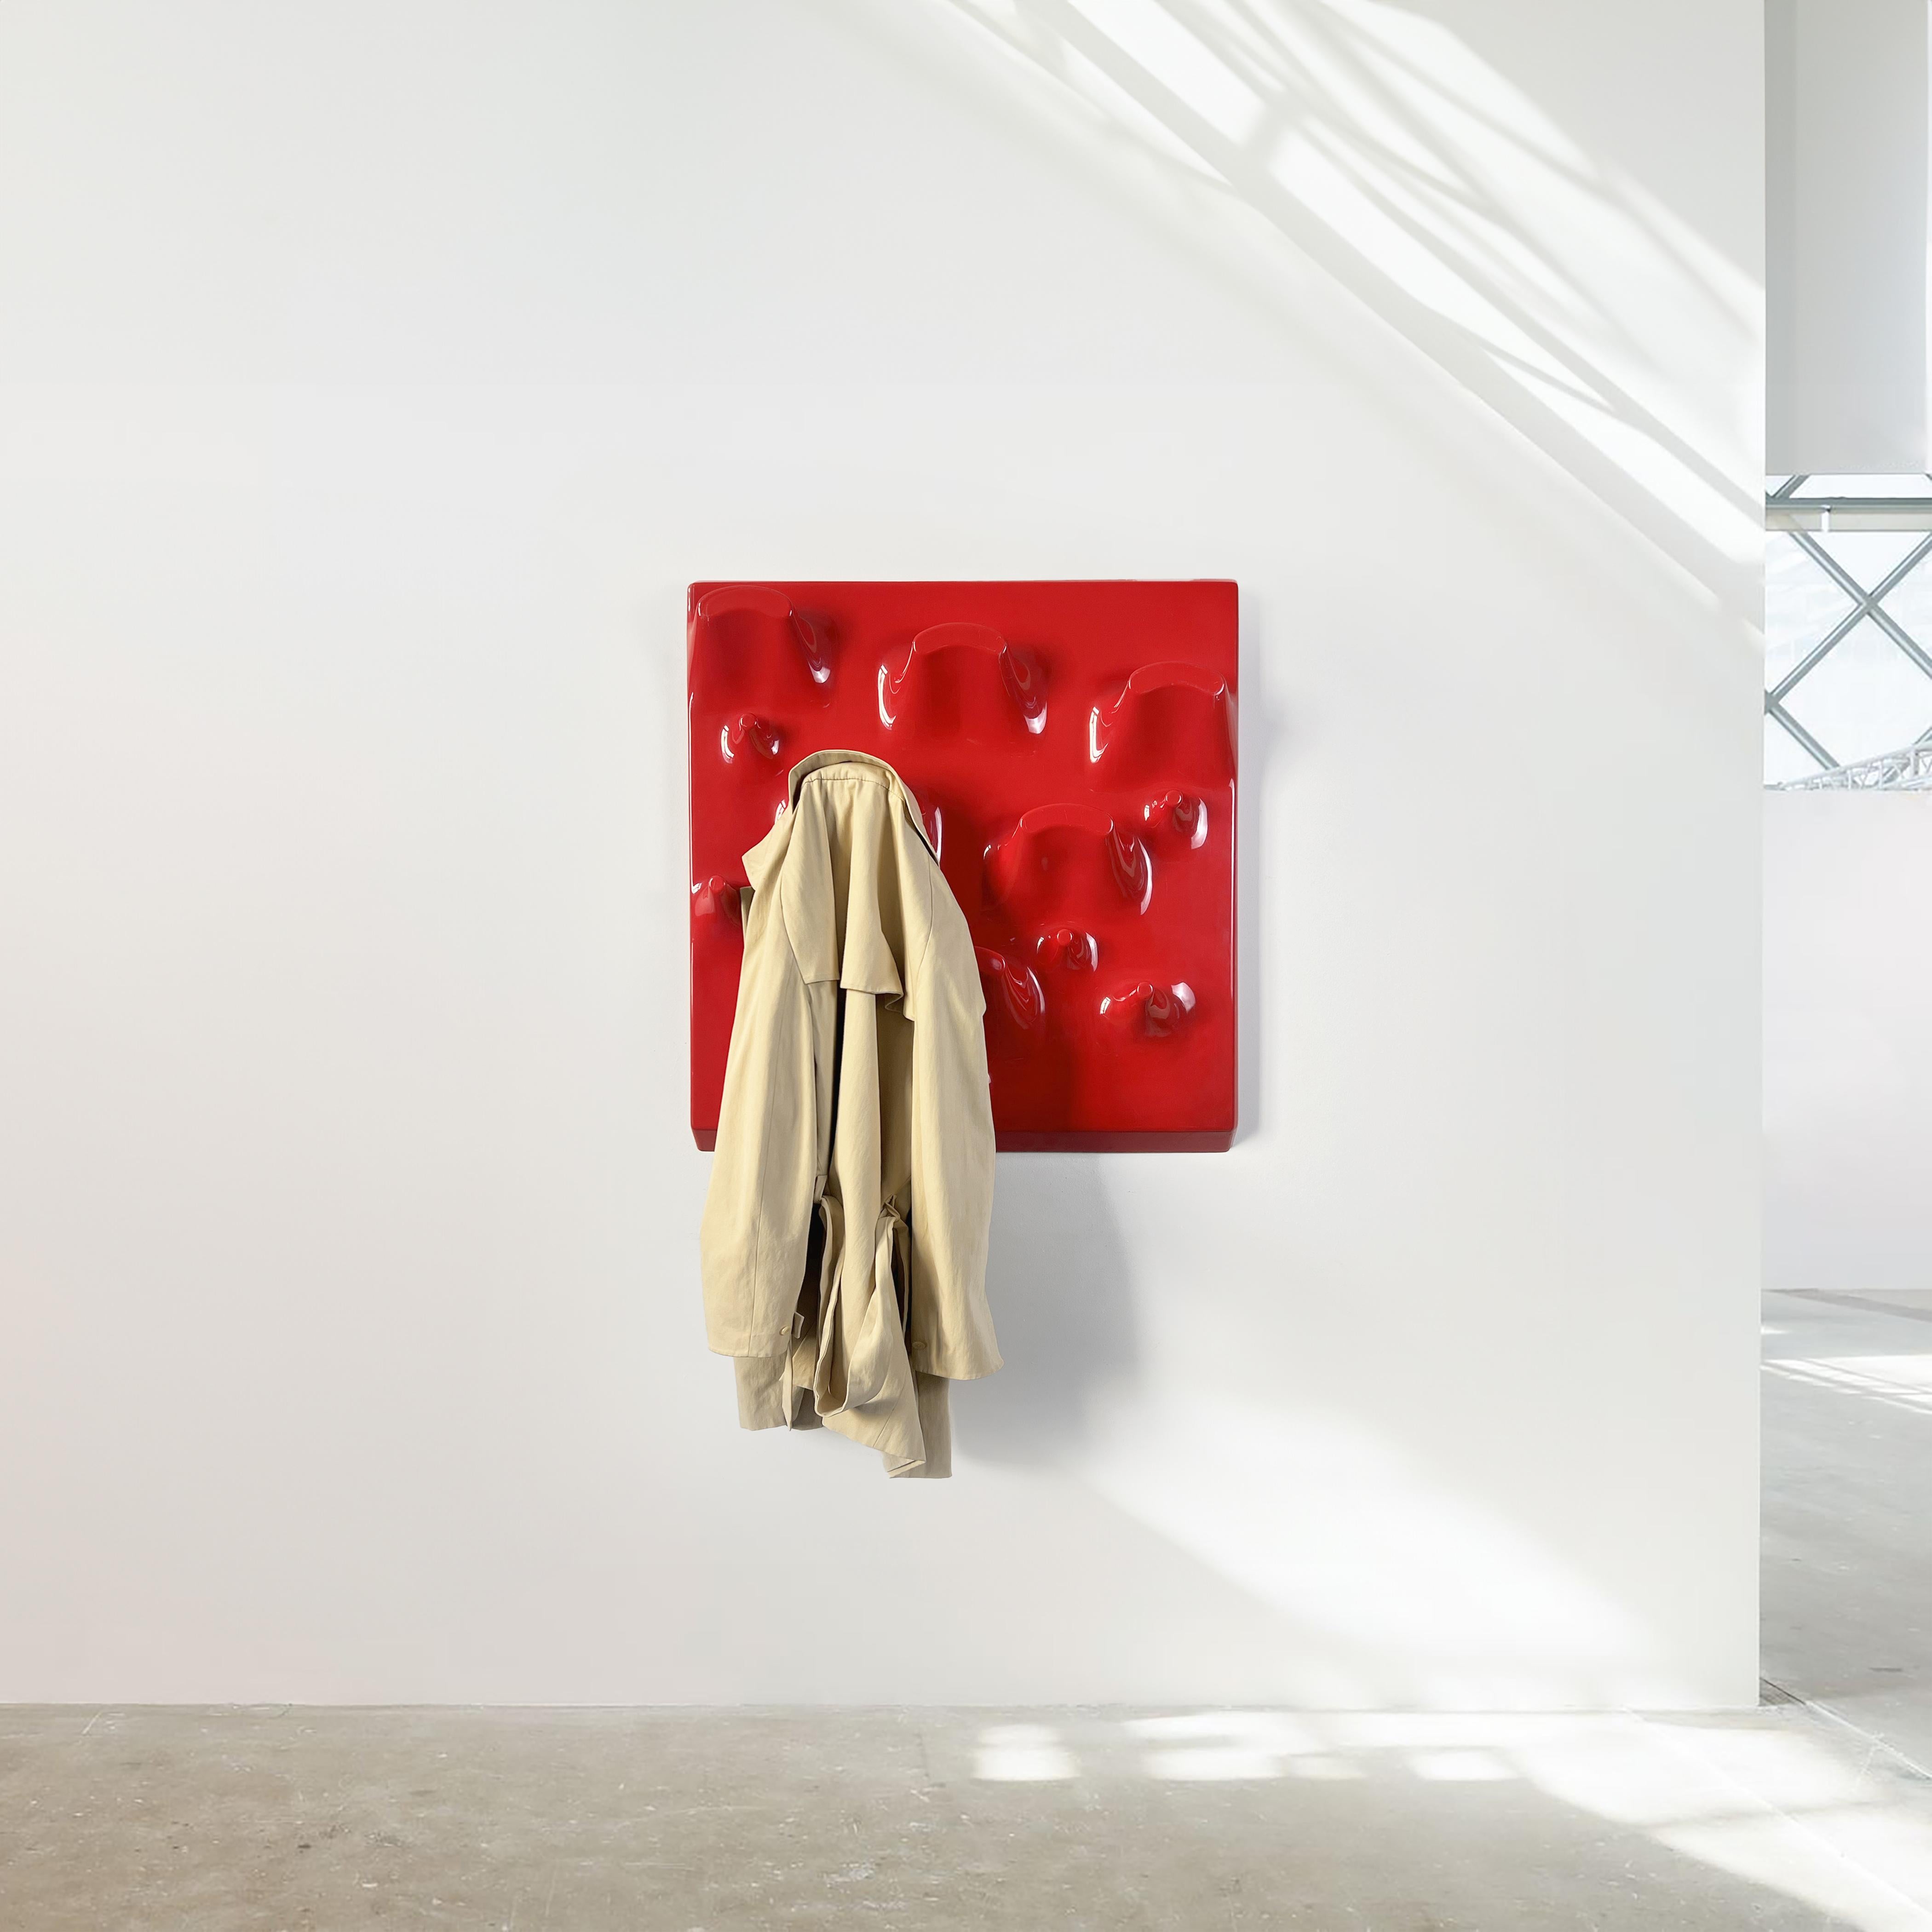 Le porte-manteau Mod Slab, conçu par Jonathan De Pas, Donato D'Urbino et Paolo Lomazzi pour Longato en Italie en 1969, est une pièce emblématique du design moderne du milieu du siècle. Ce porte-manteau innovant et fonctionnel illustre l'engagement